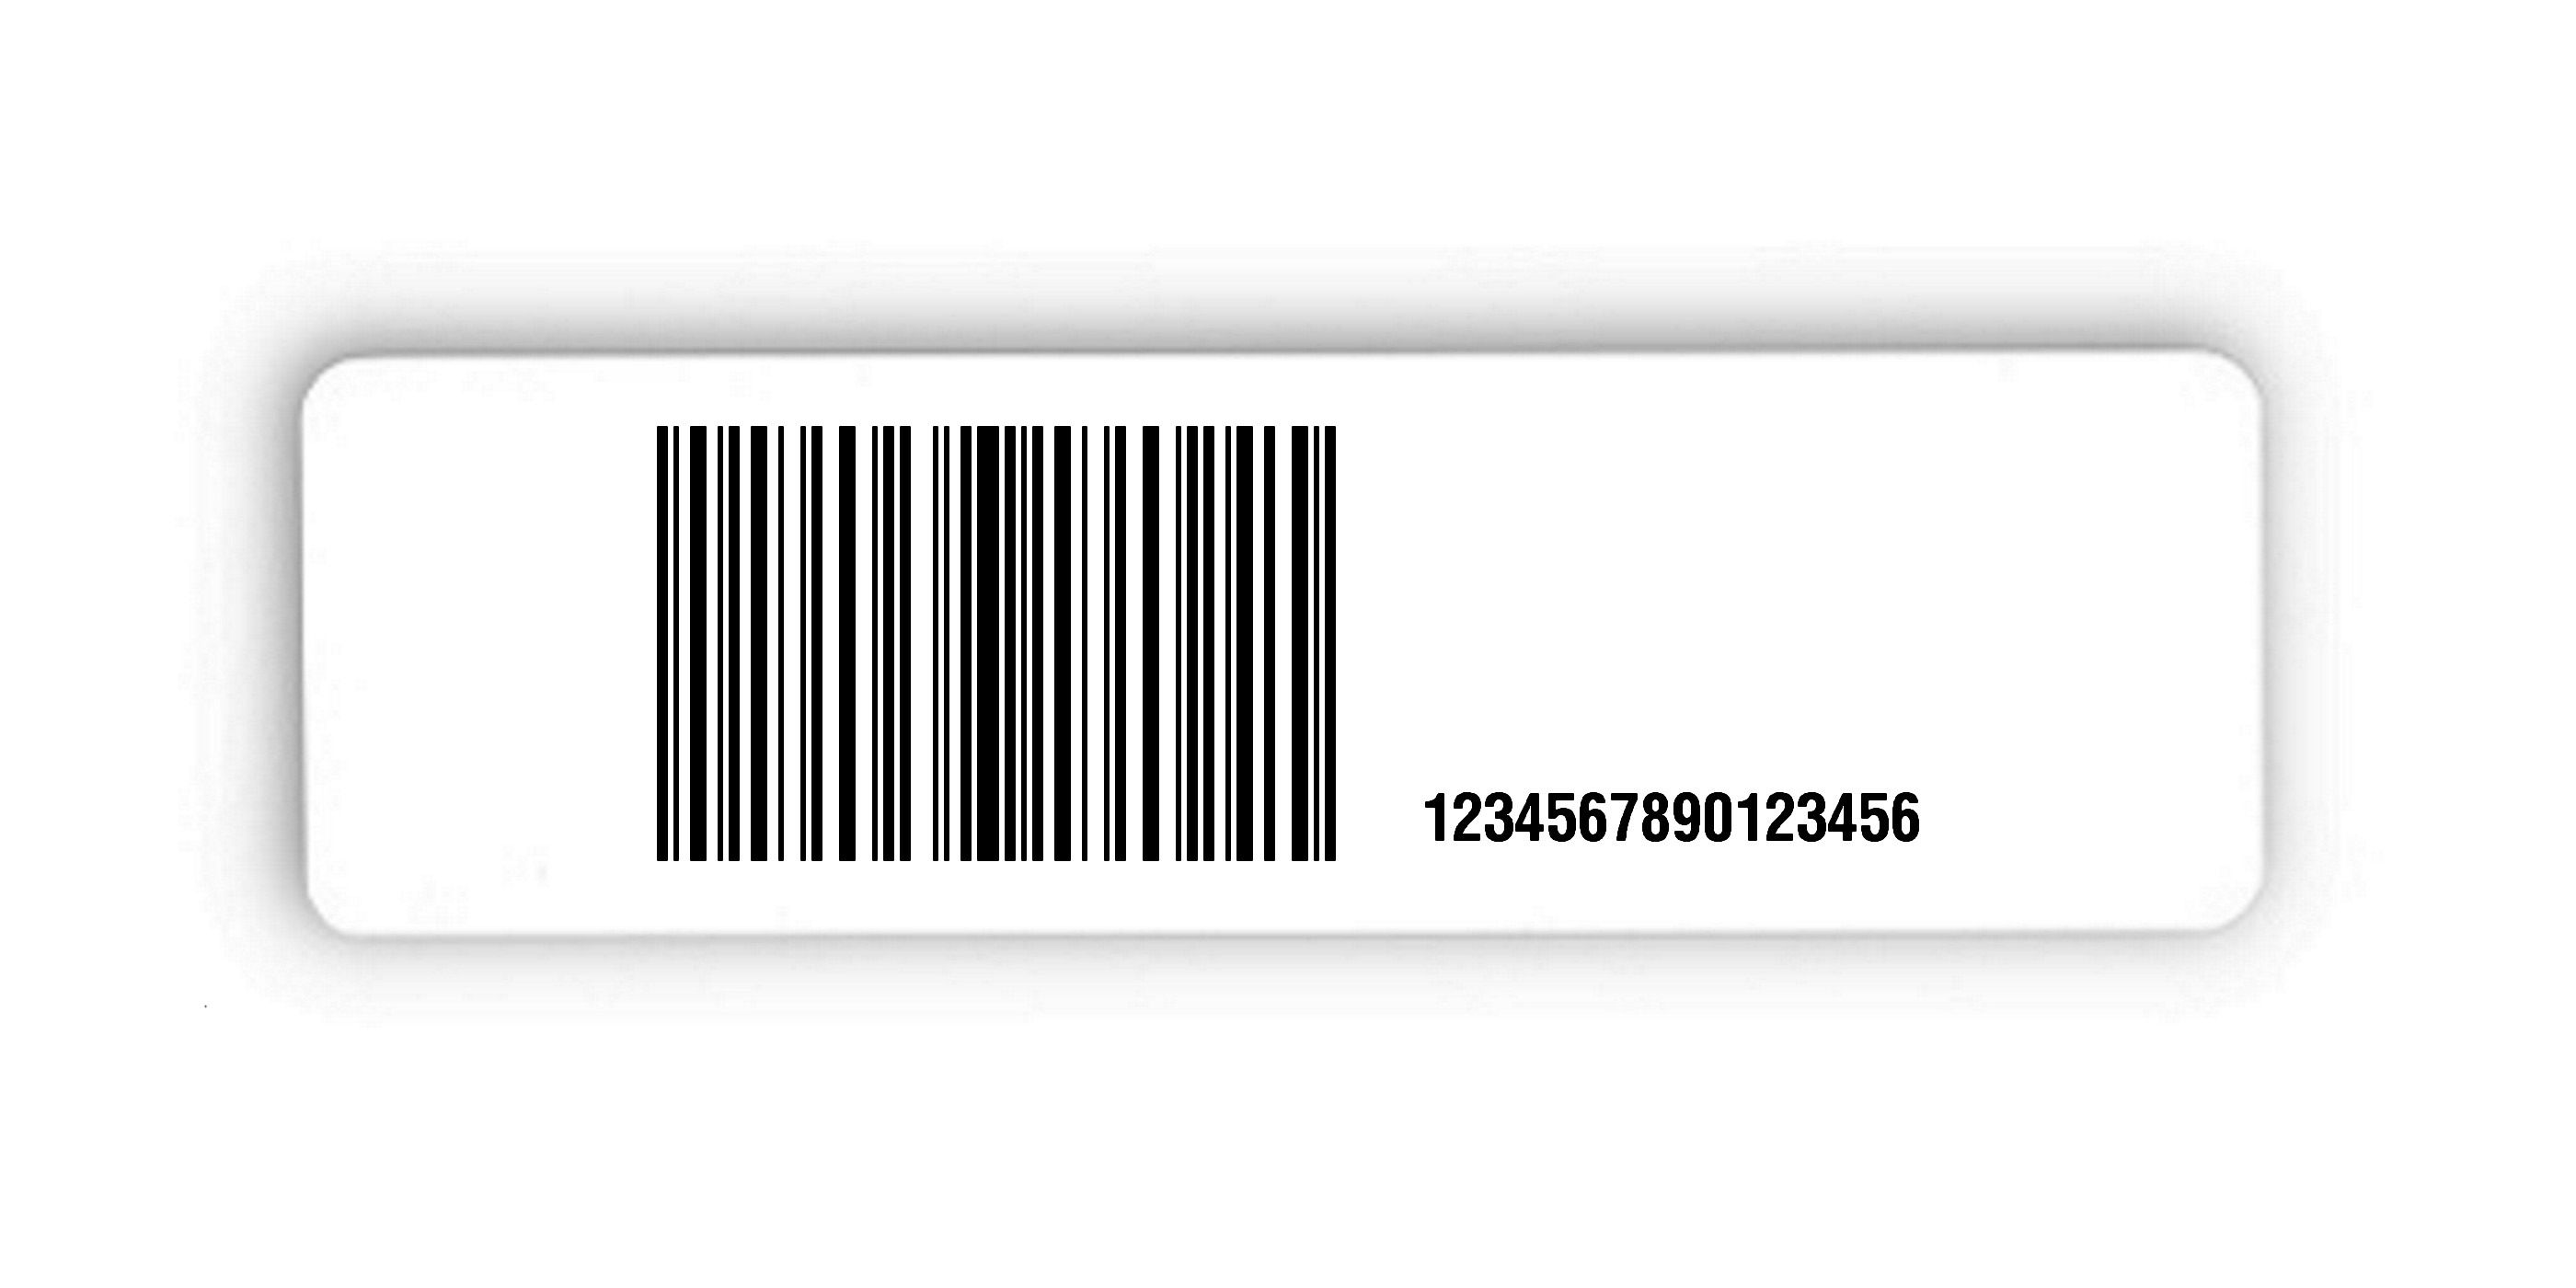 Universaletiketten Material:Folie hochglänzend weiß Größe:150x50mm Kopfzeile:"ohne" Barcode:128C Stellenanzahl:16-stellig Ausführung:4 Etiketten pro Nummer Menge:100